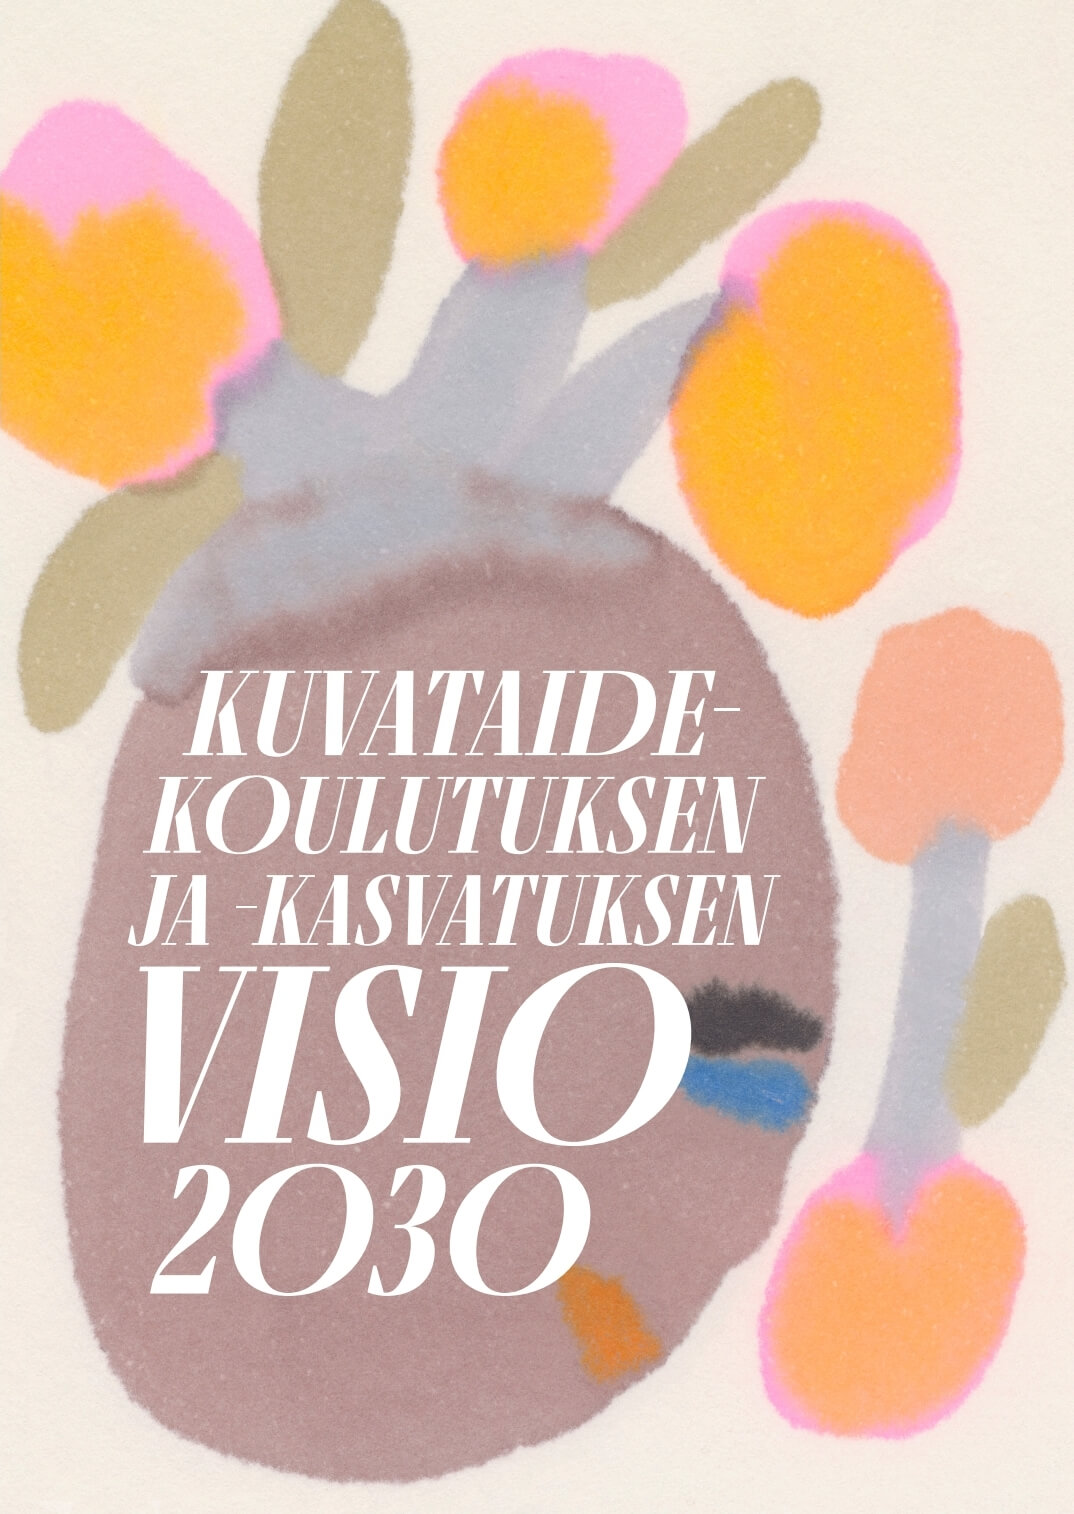 Kuvataidekoulutuksen- ja kasvatuksen visio 2030 -julkaisun kansikuva.